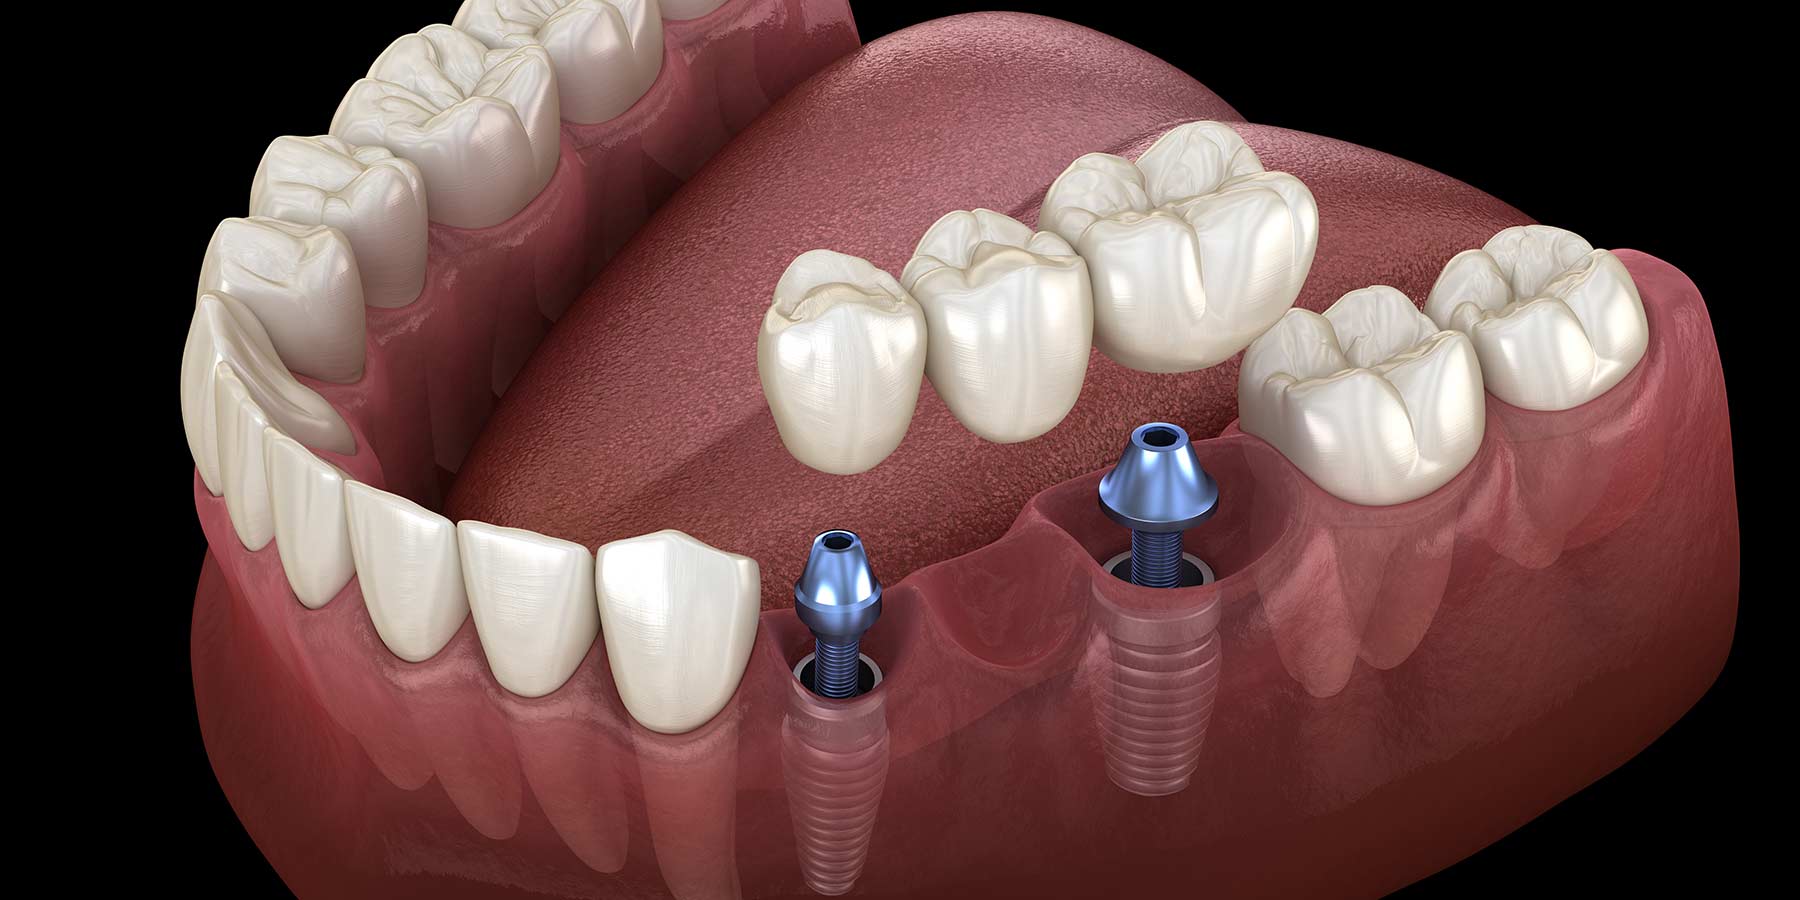 dental implants gone wrong